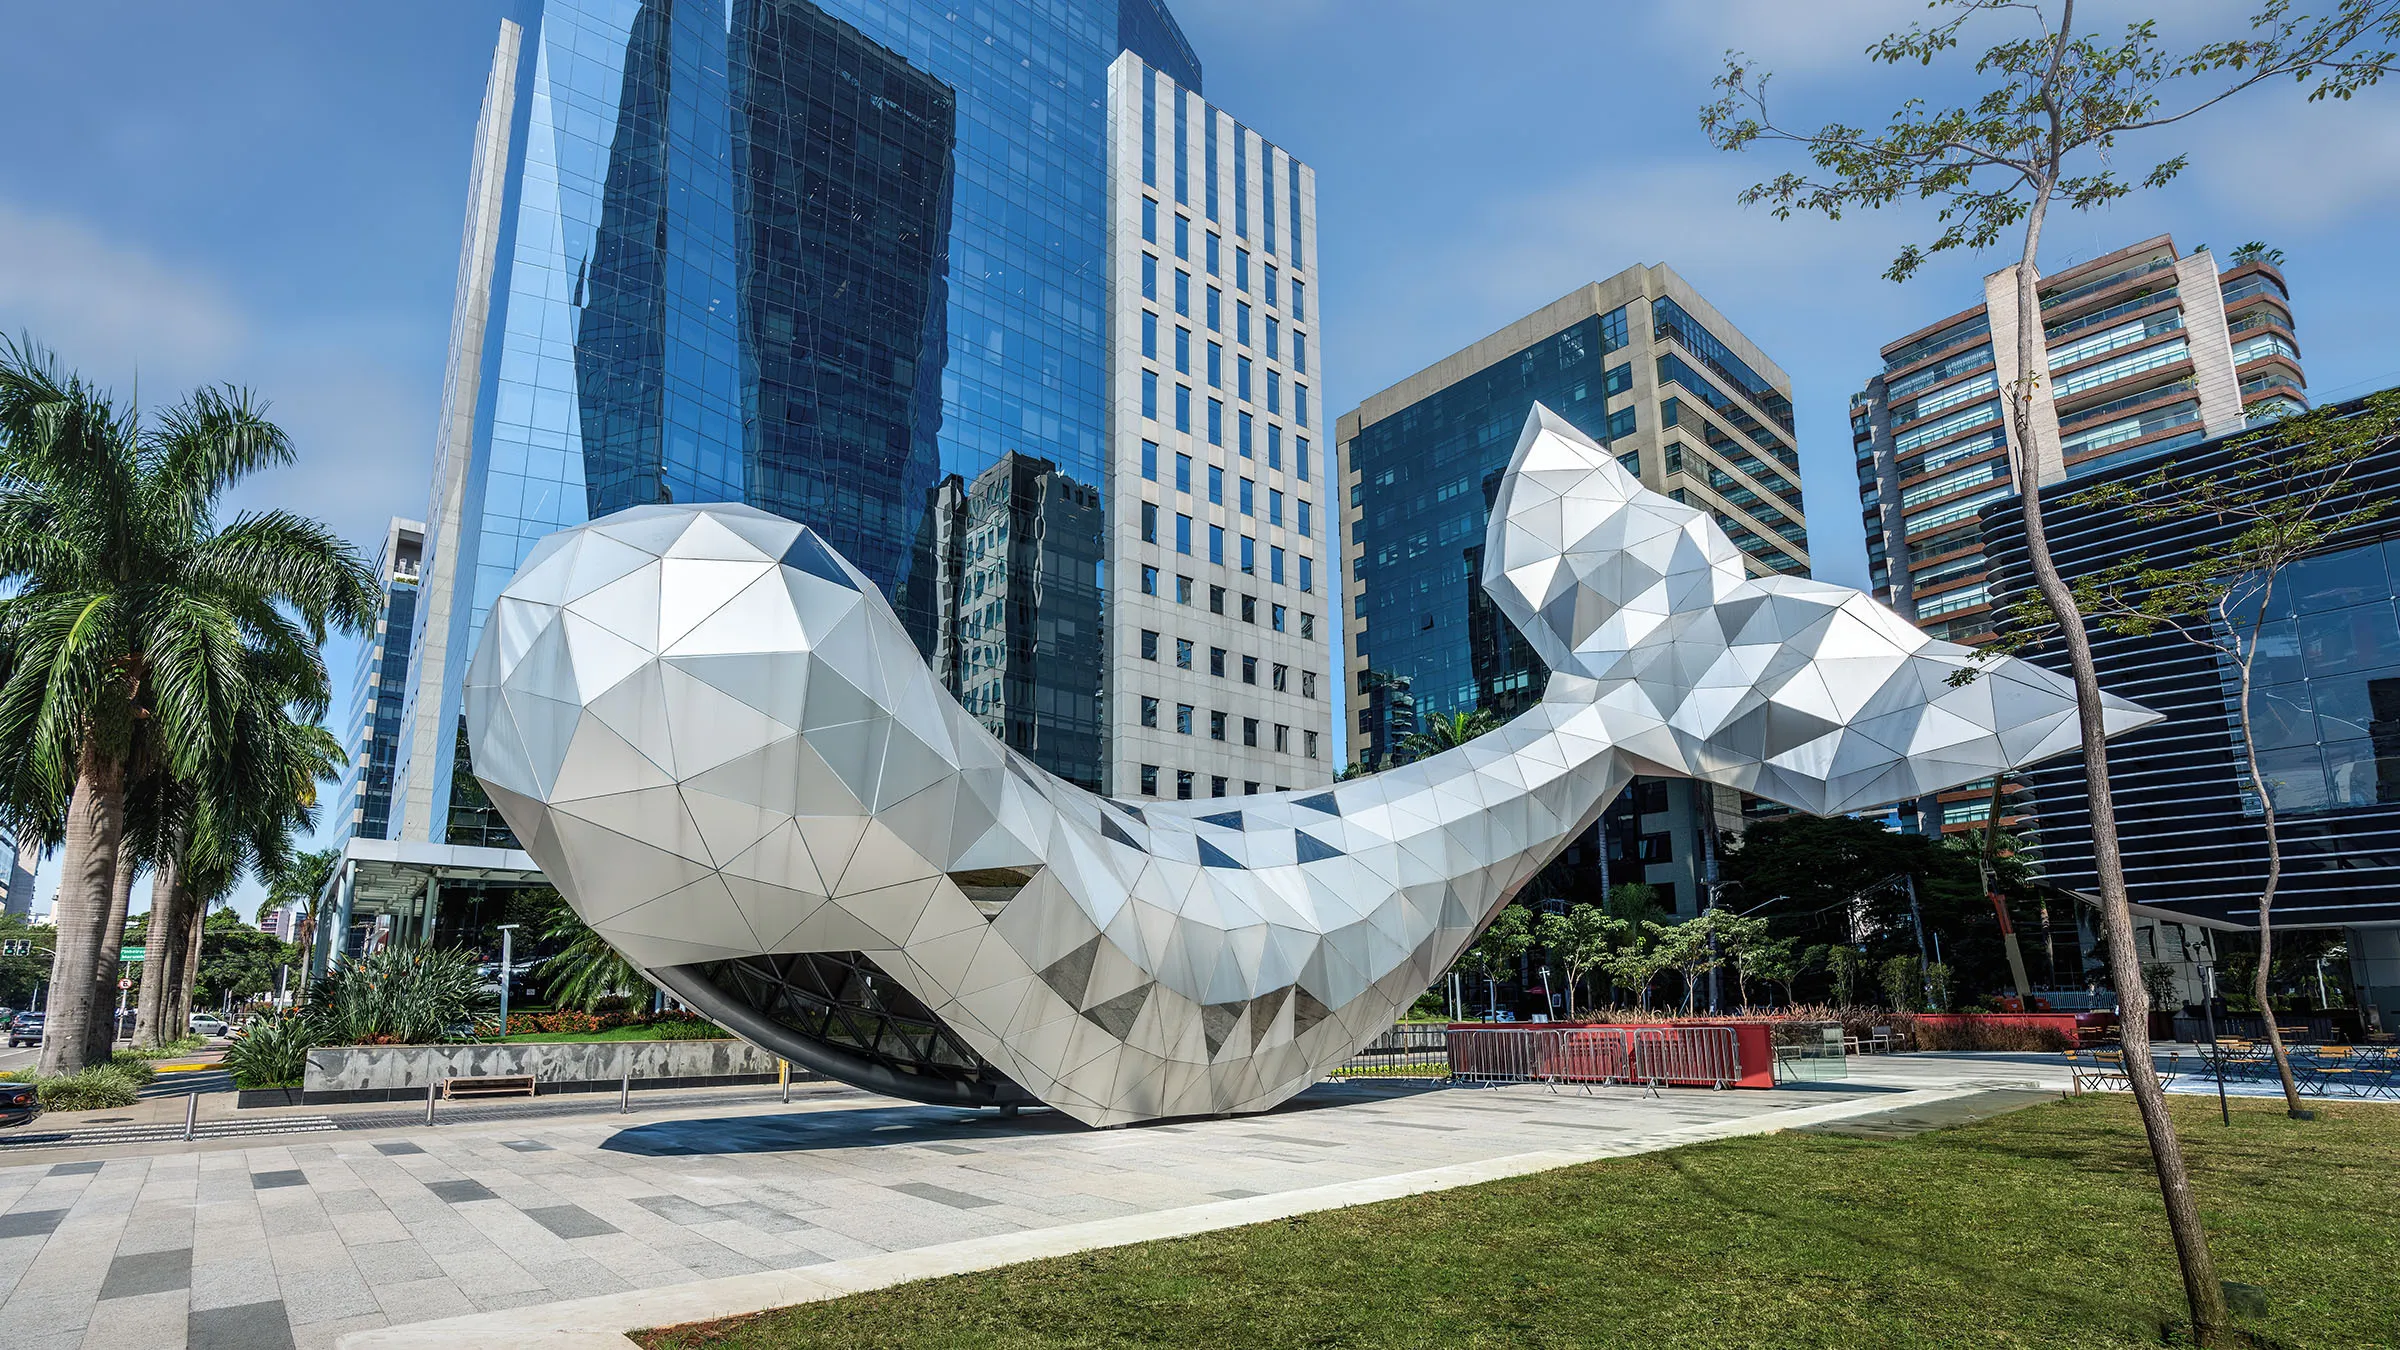 Metallic whale sculpture at Brigadeiro Faria Lima Avenue in Sao Paulo, Brazil. Image: Diego Grandi/Shutterstock.